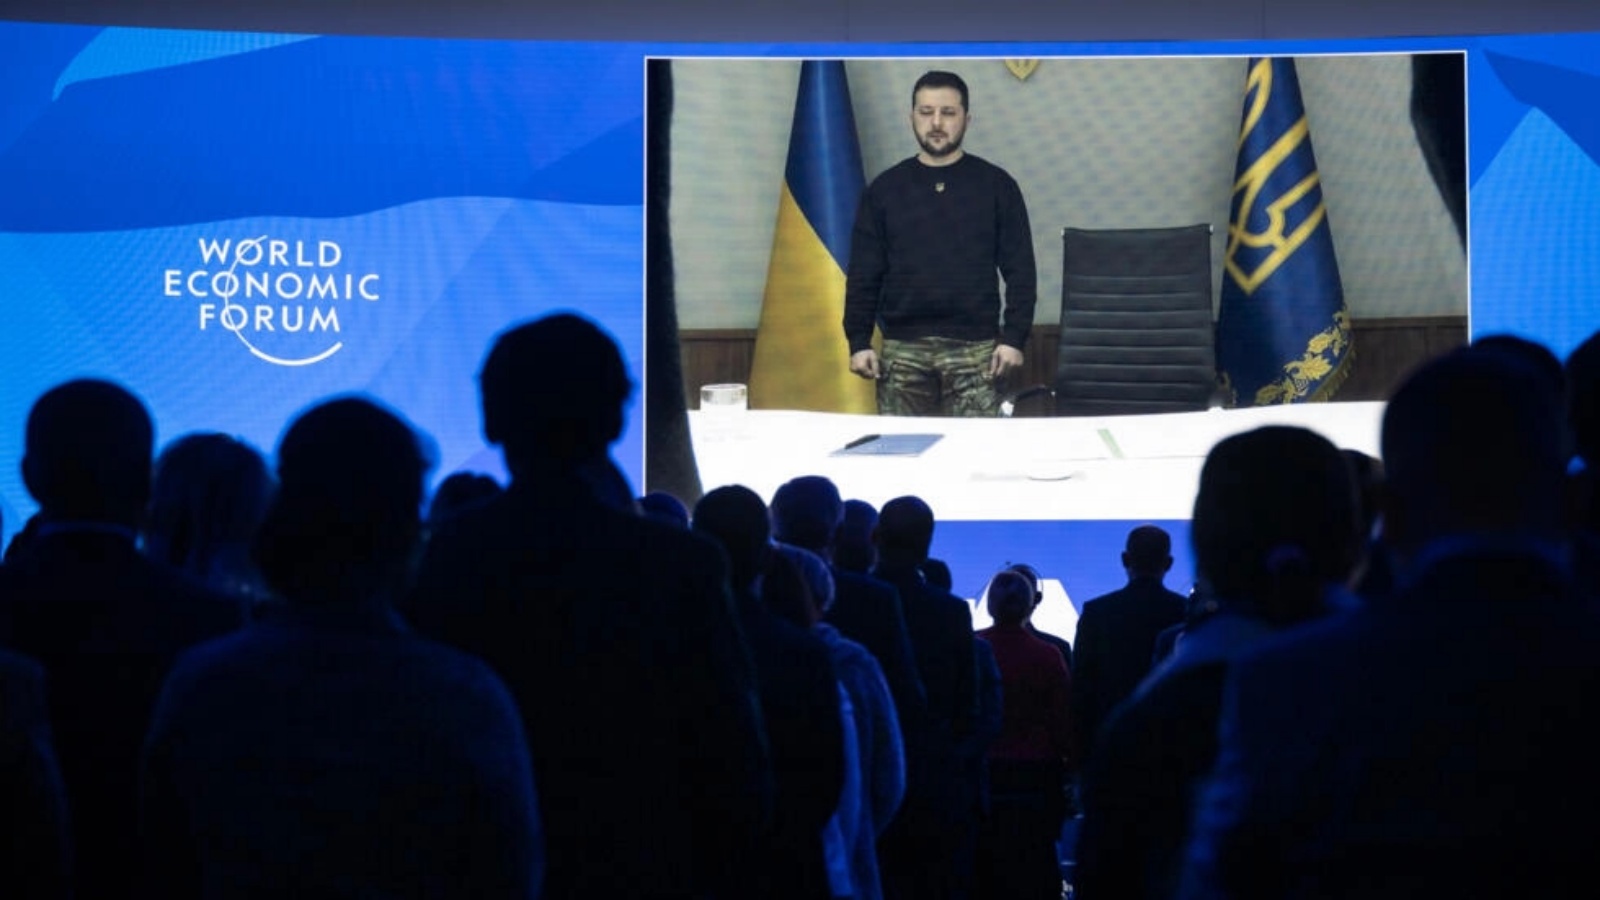 الرئيس الأوكراني فولوديمير زيلينسكي يظهر على شاشة عبر رابط فيديو بينما يقف المشاركون في المنتدى الاقتصادي العالمي دقيقة صمت حداداً على وزير الداخلية الأوكراني الراحل، في مركز المؤتمرات خلال الاجتماع السنوي للمنتدى الاقتصادي العالمي في دافوس في 18 يناير 2023